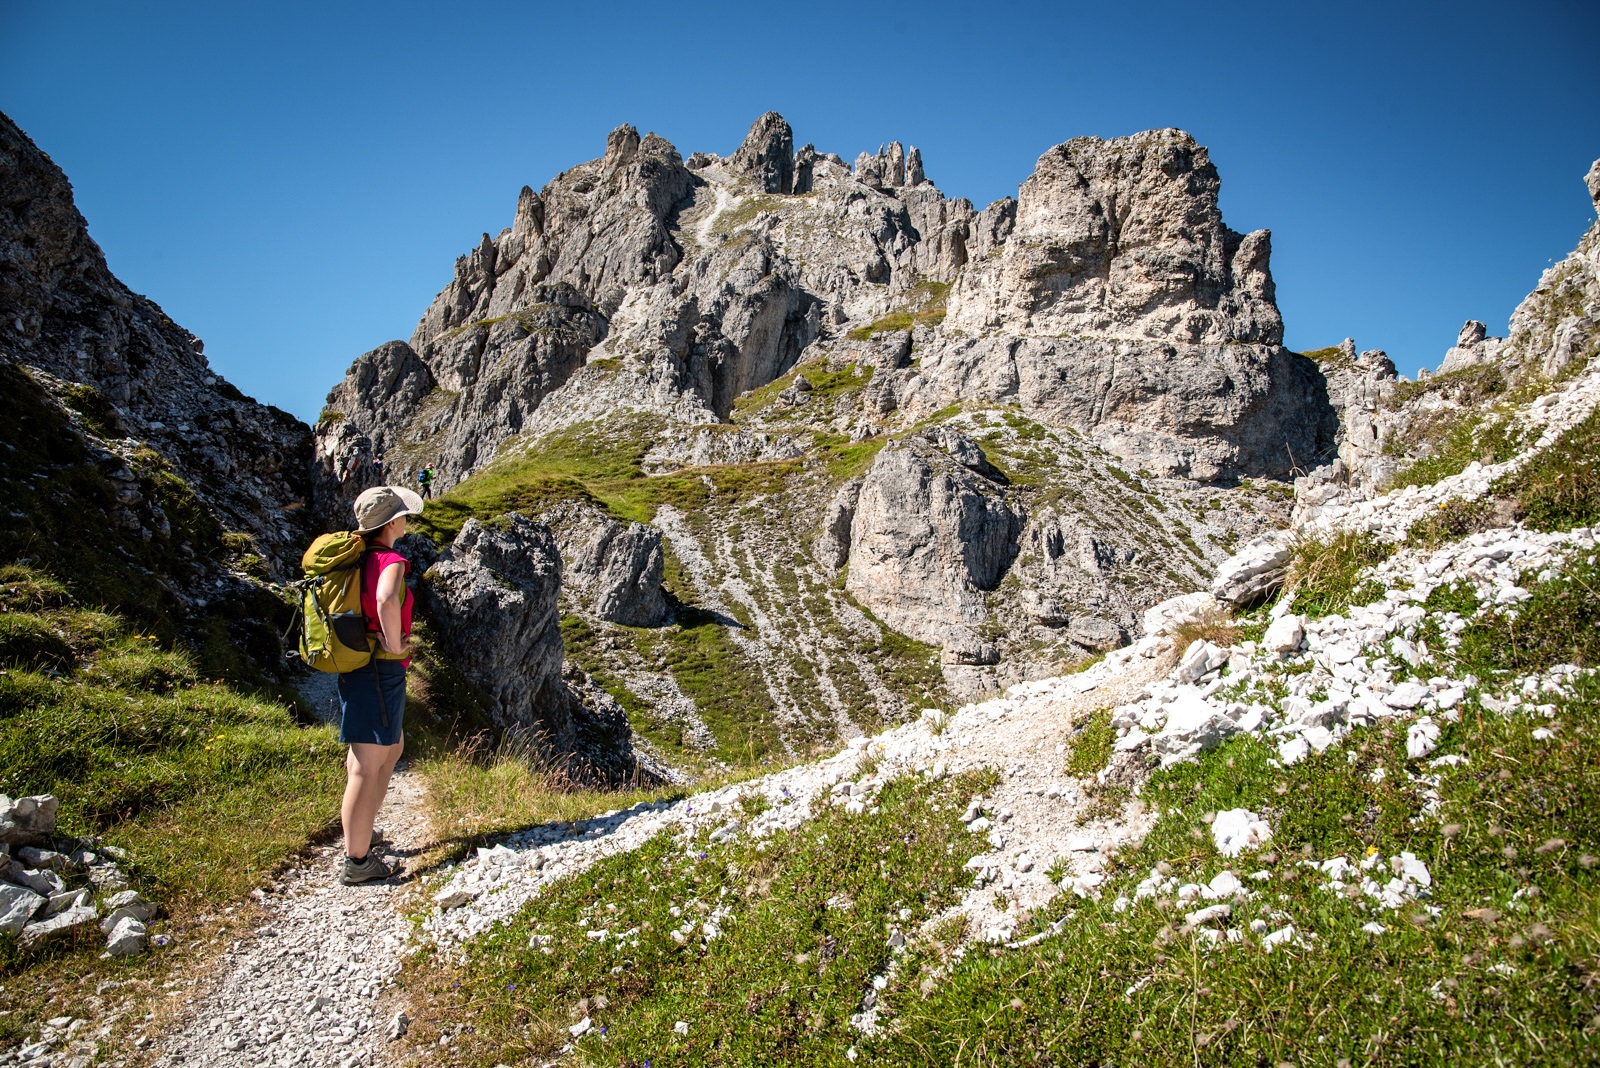 Turystka na szlaku w Alpach. Widok na góry i alpejskie skały. Szlak na Elferspitze